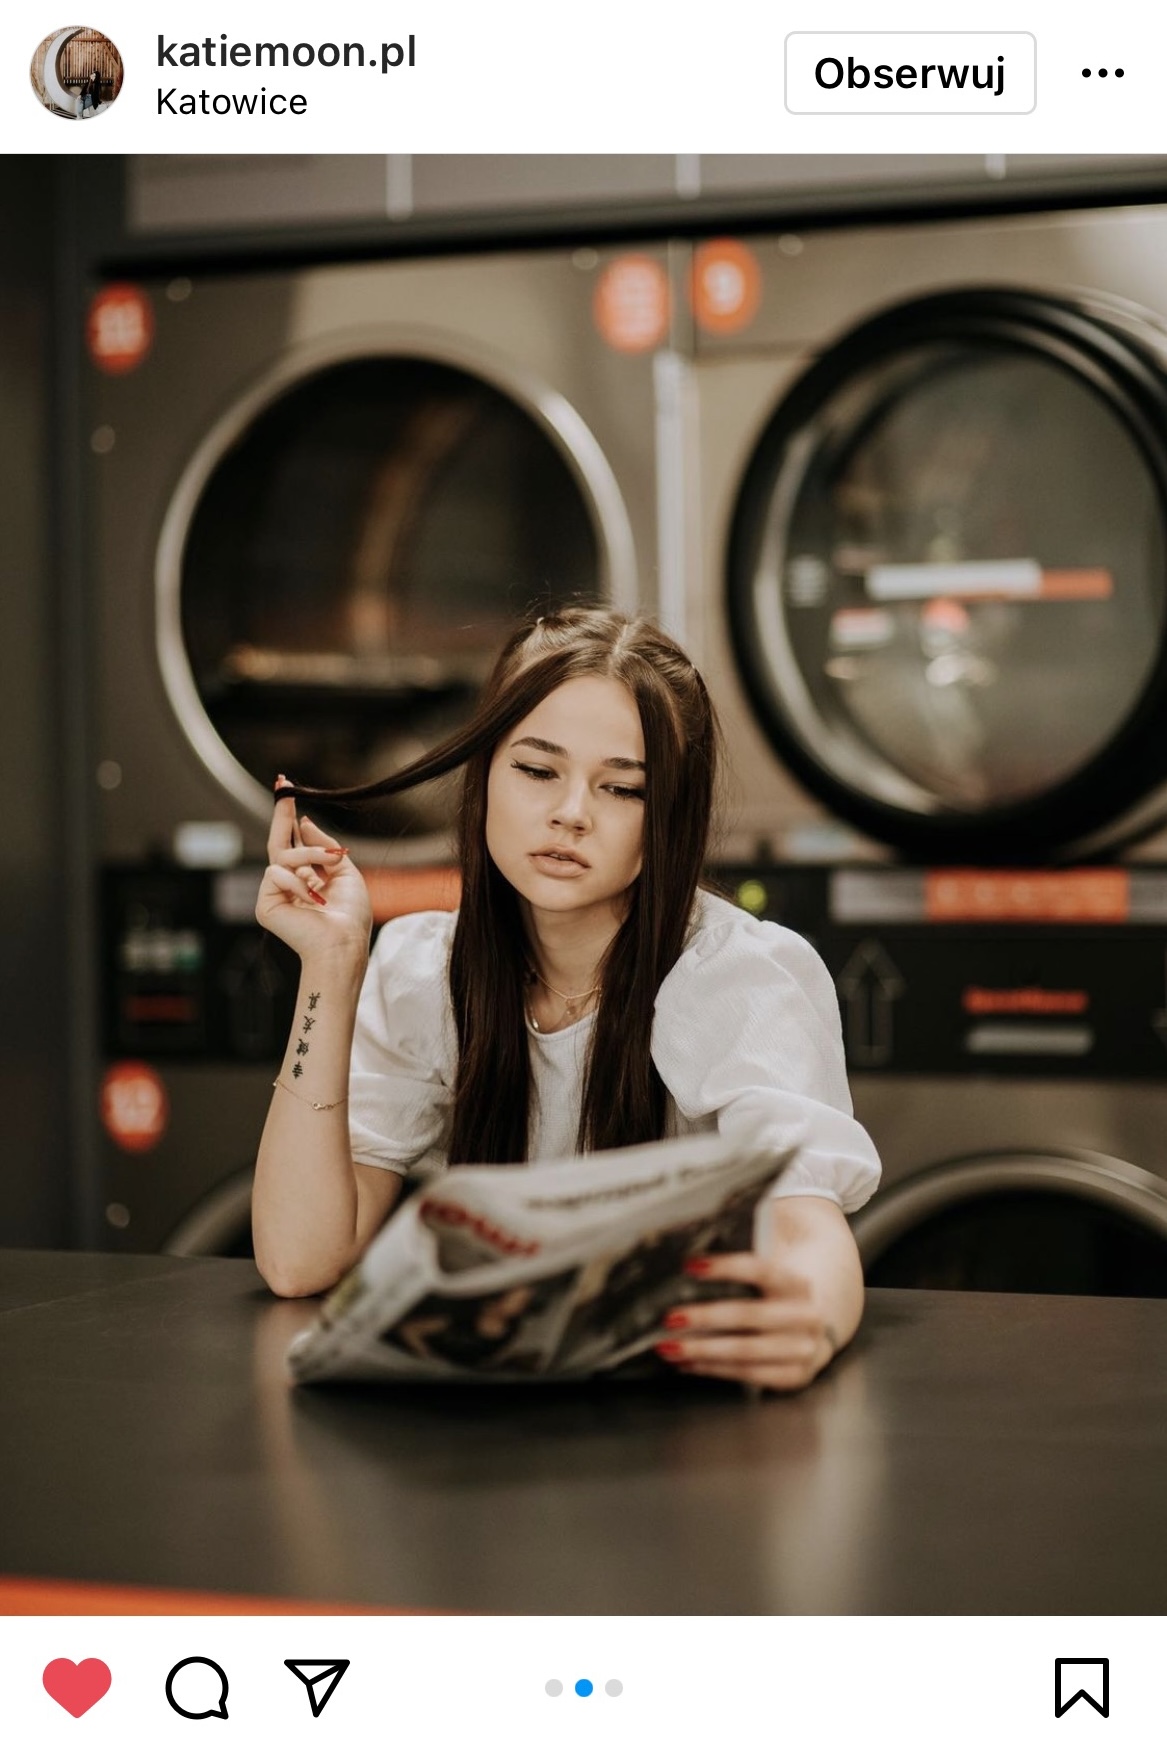 dziewczyna bawiąca się włosami i czytająca gazetę w tle pralnia